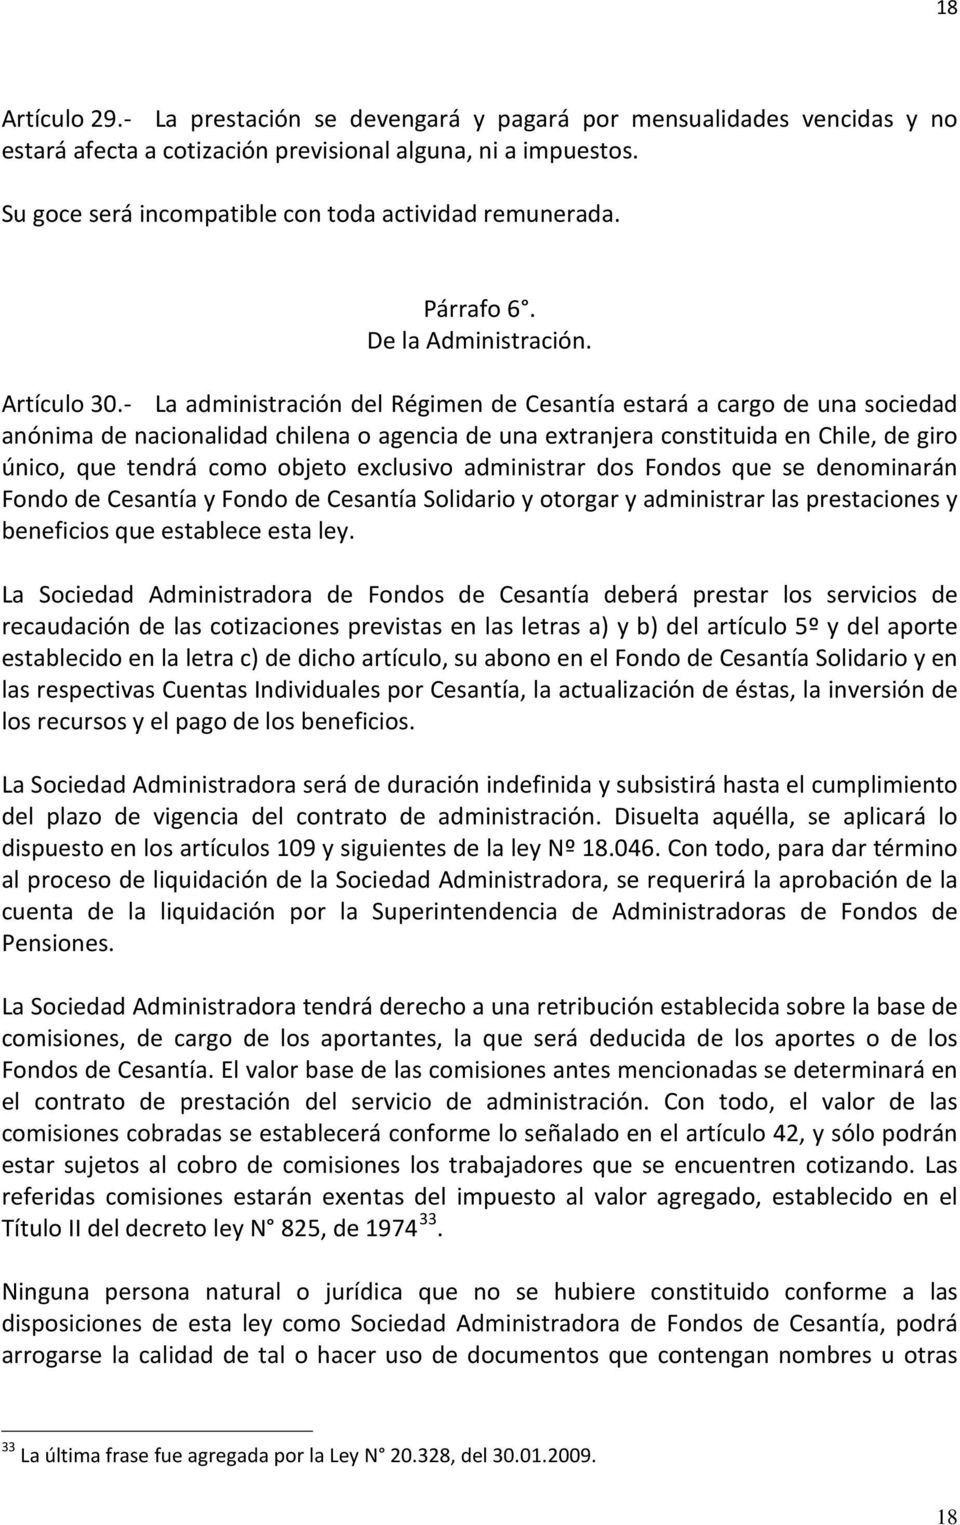 - La administración del Régimen de Cesantía estará a cargo de una sociedad anónima de nacionalidad chilena o agencia de una extranjera constituida en Chile, de giro único, que tendrá como objeto